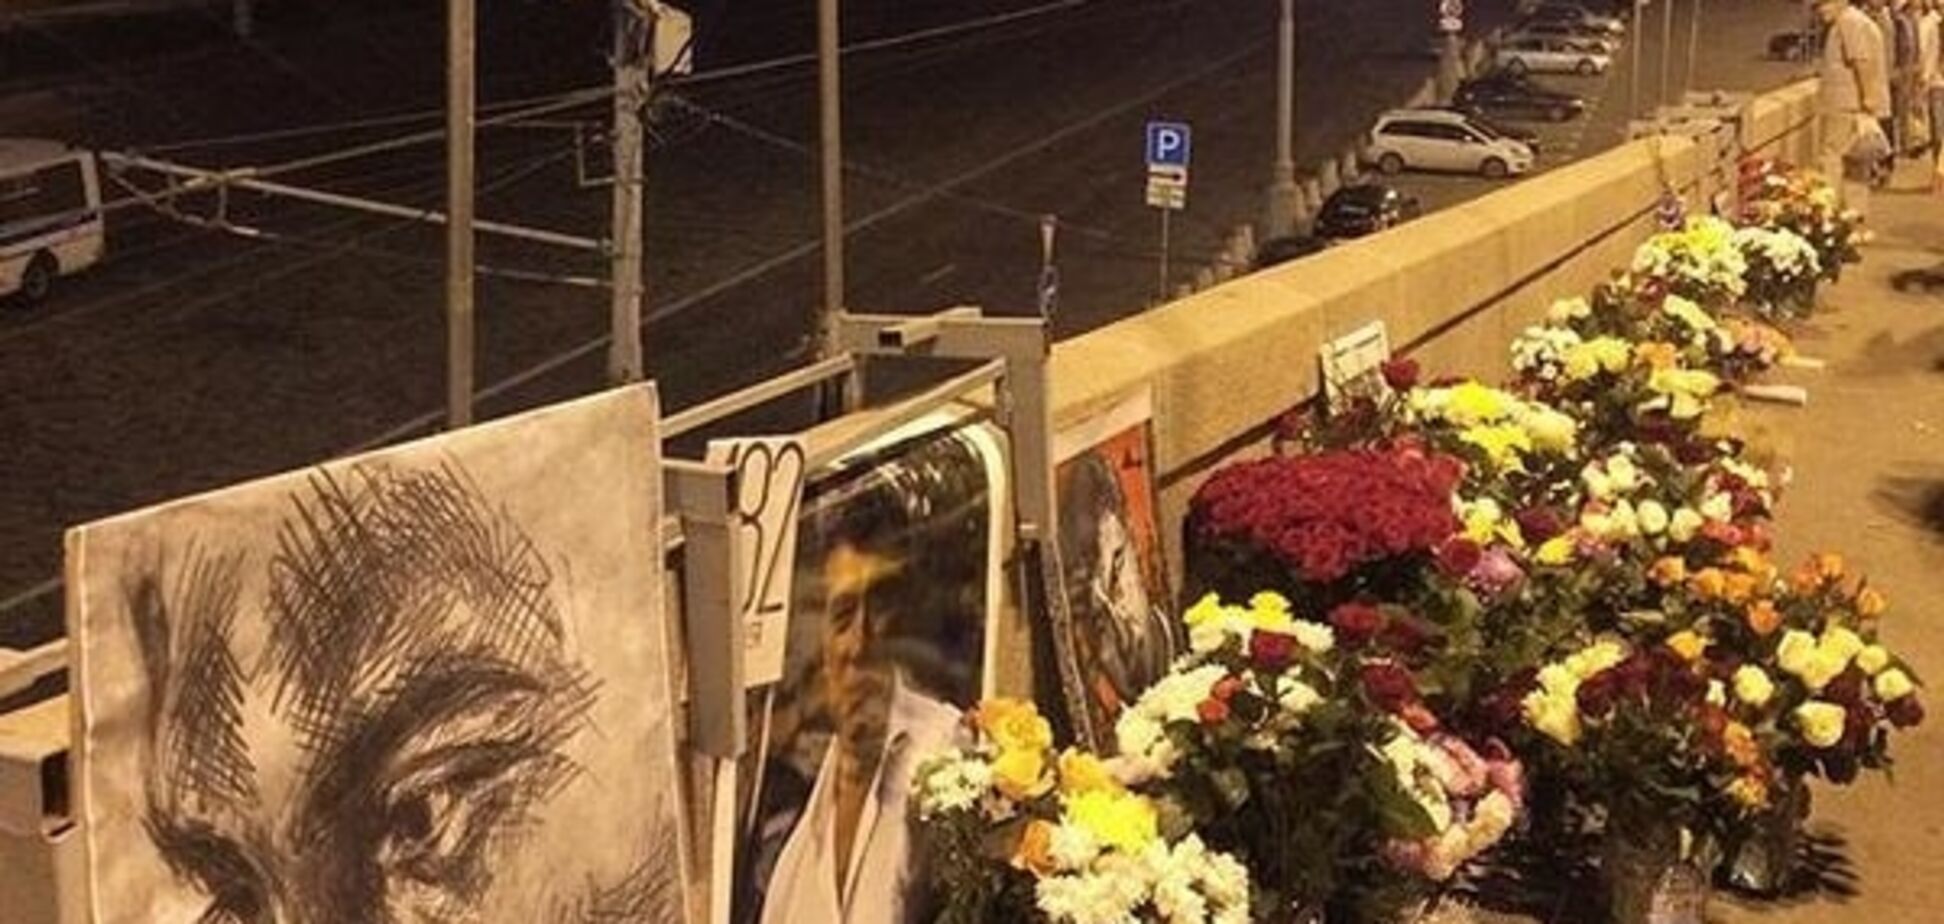 Півроку без Нємцова: небайдужі москвичі несуть квіти до місця вбивства політика